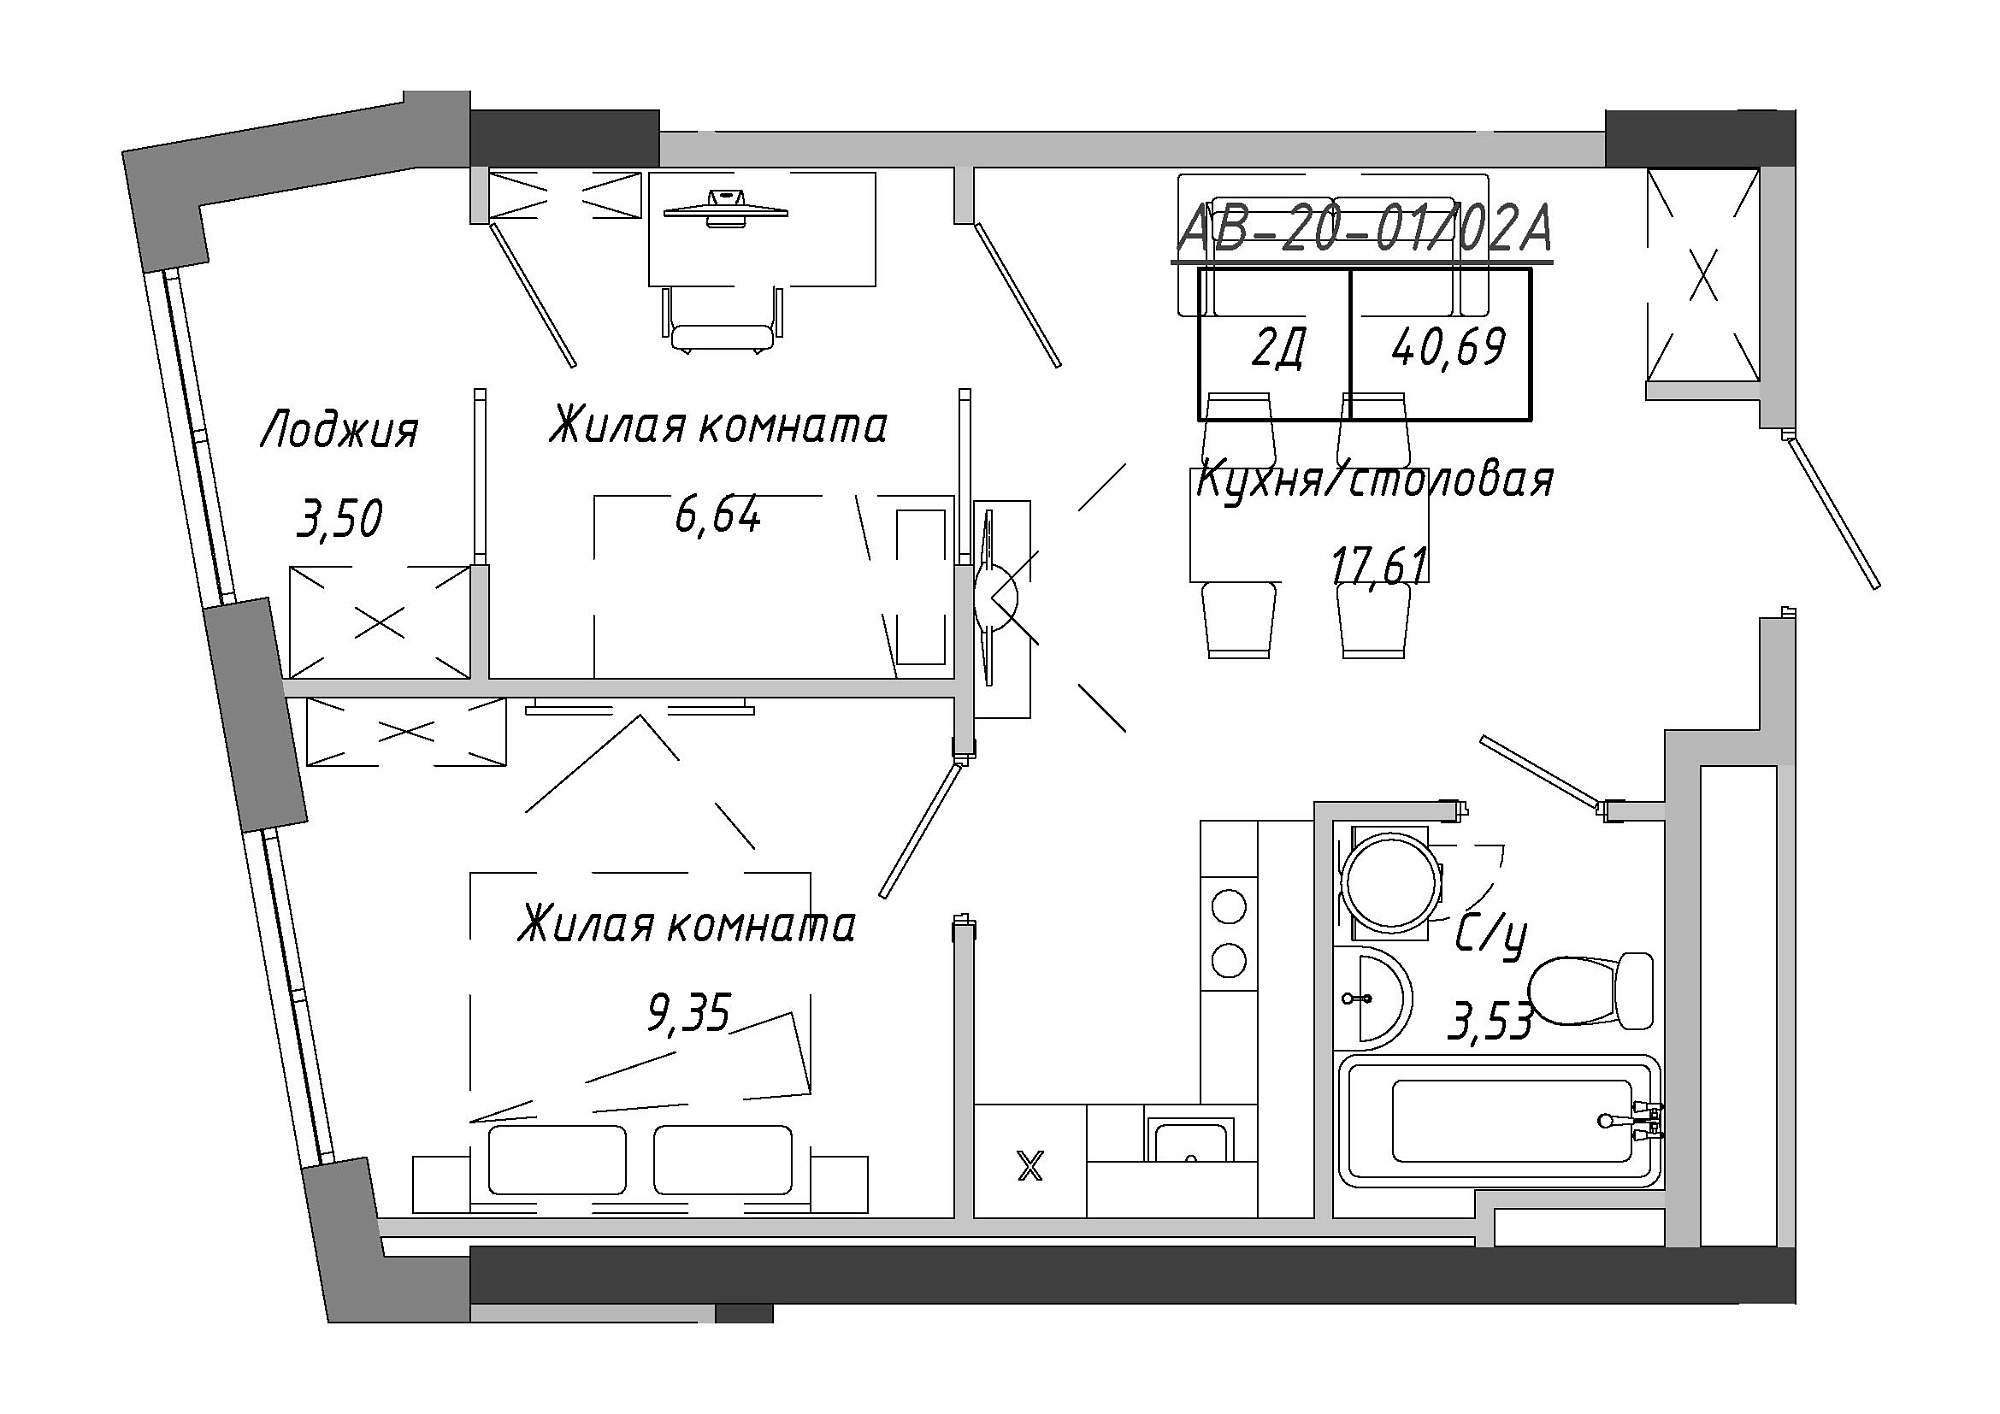 Планування 2-к квартира площею 40.69м2, AB-20-01/0002а.